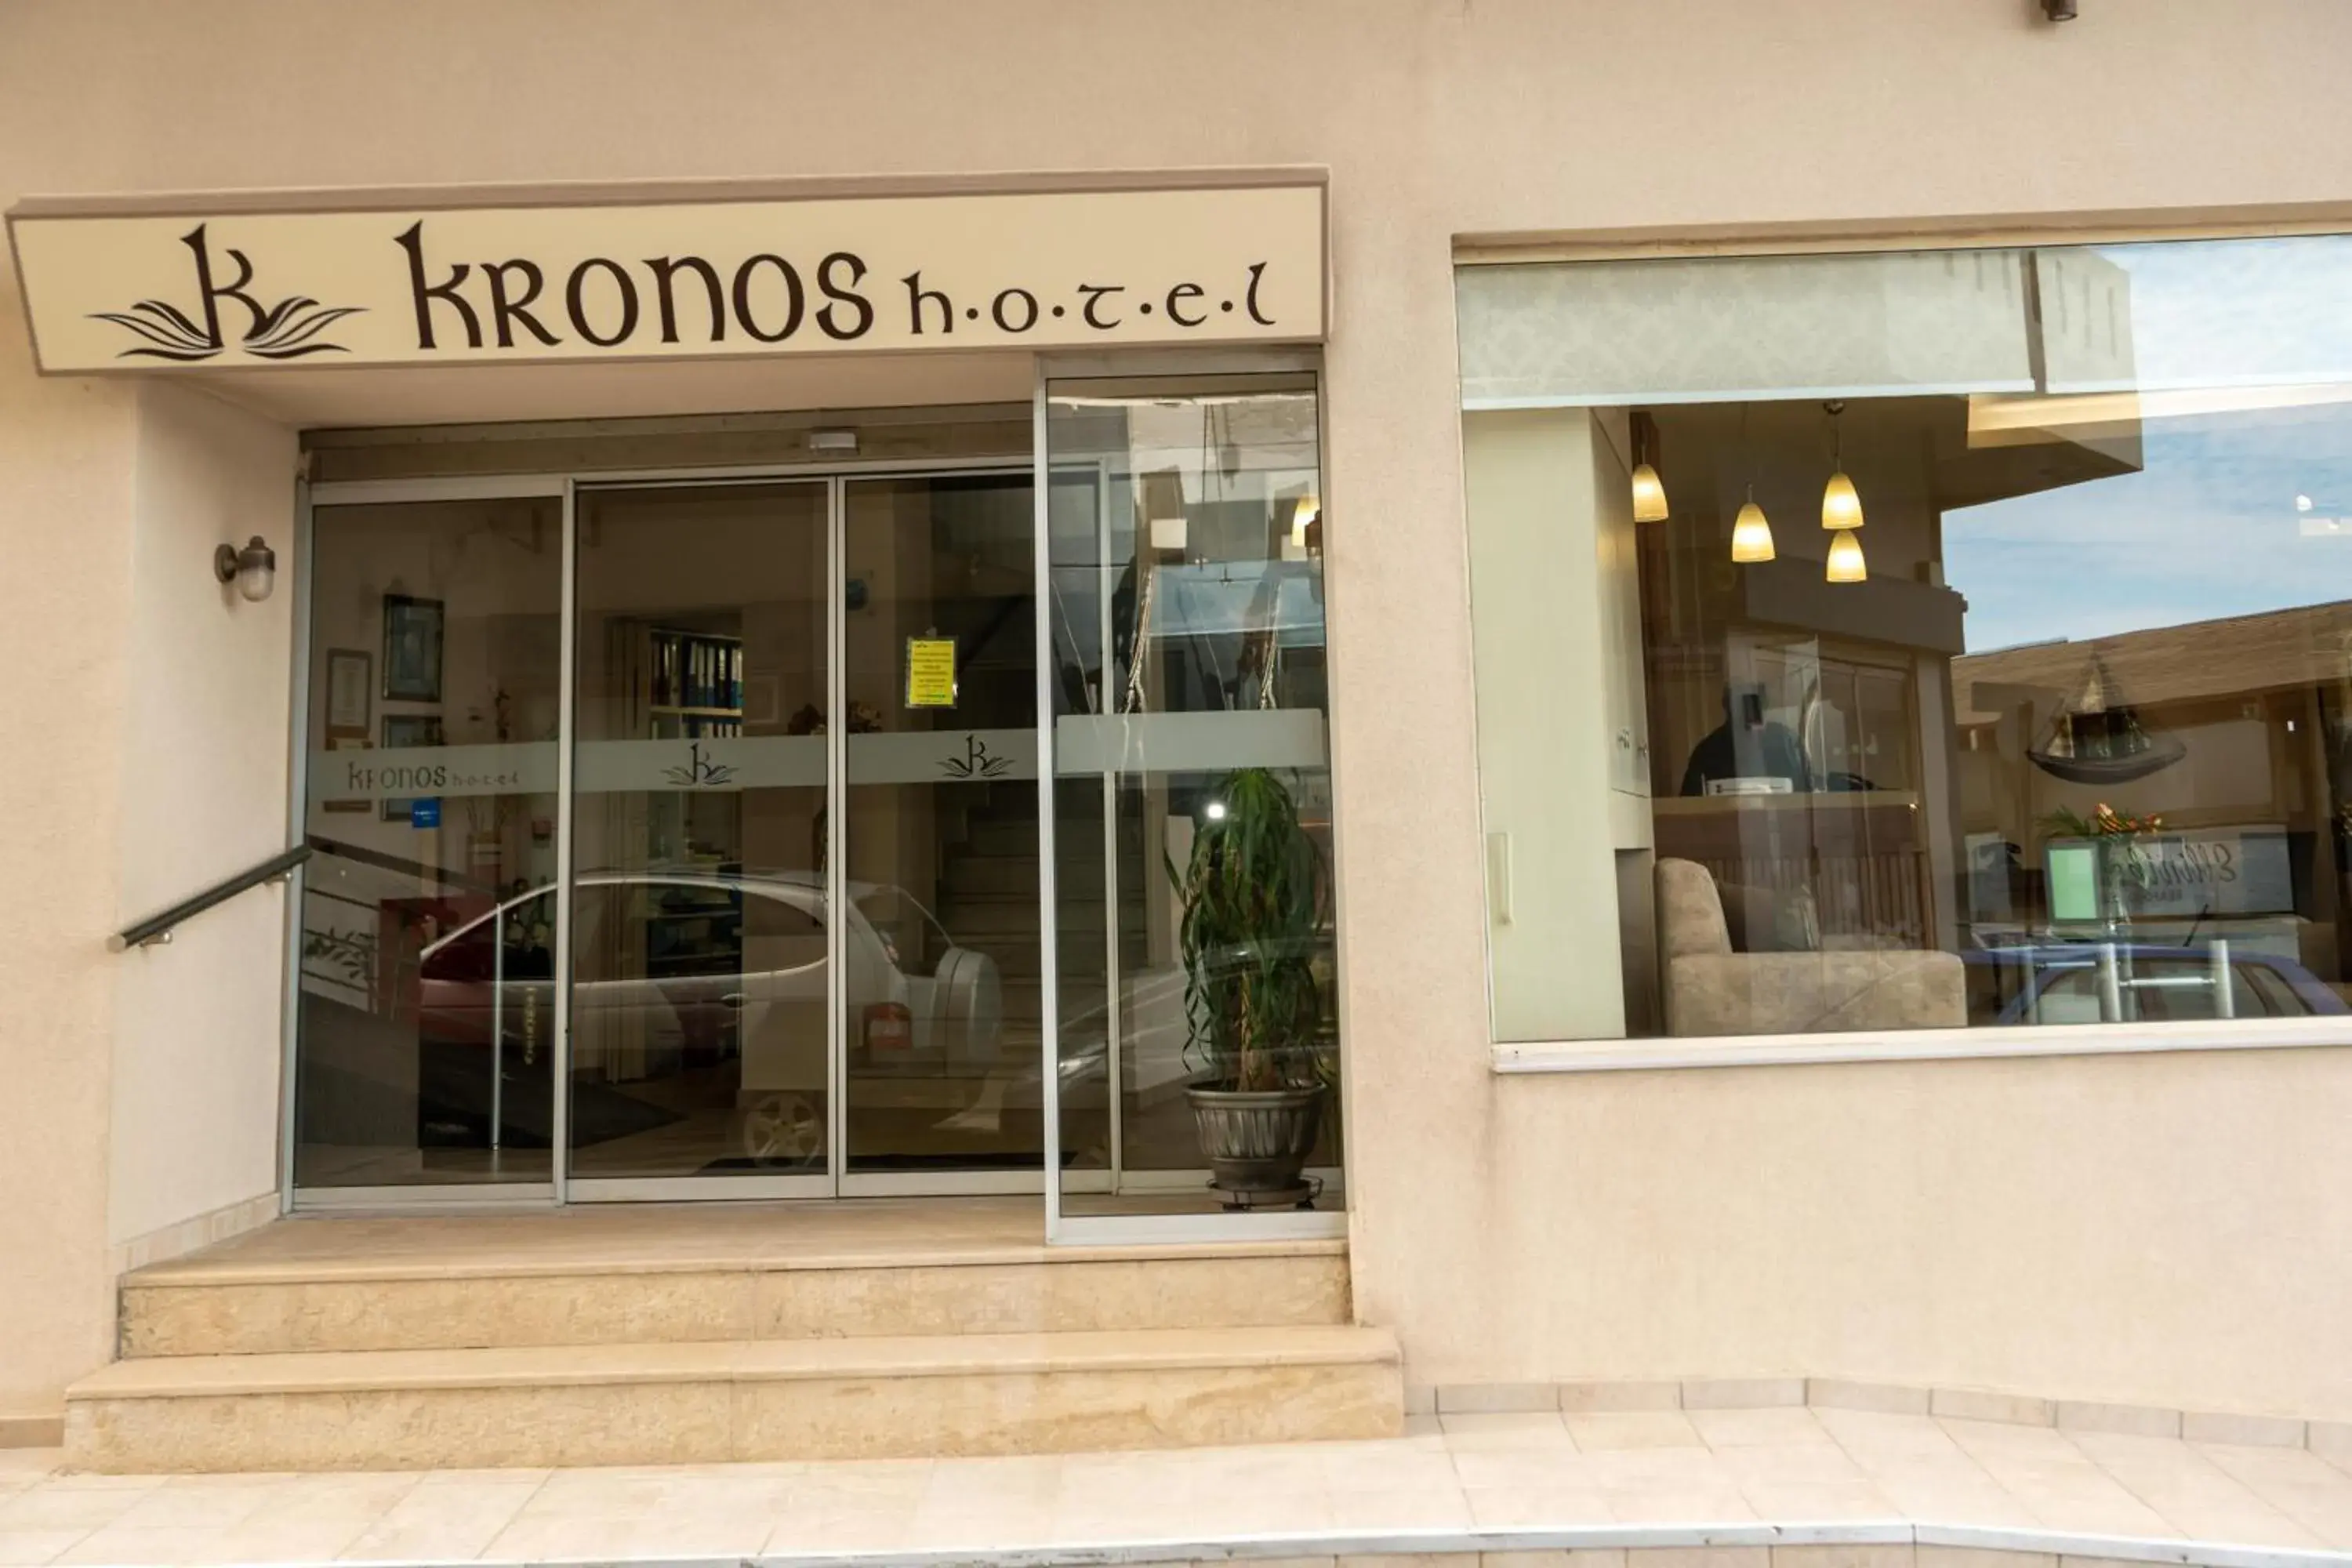 Property building in Kronos Hotel